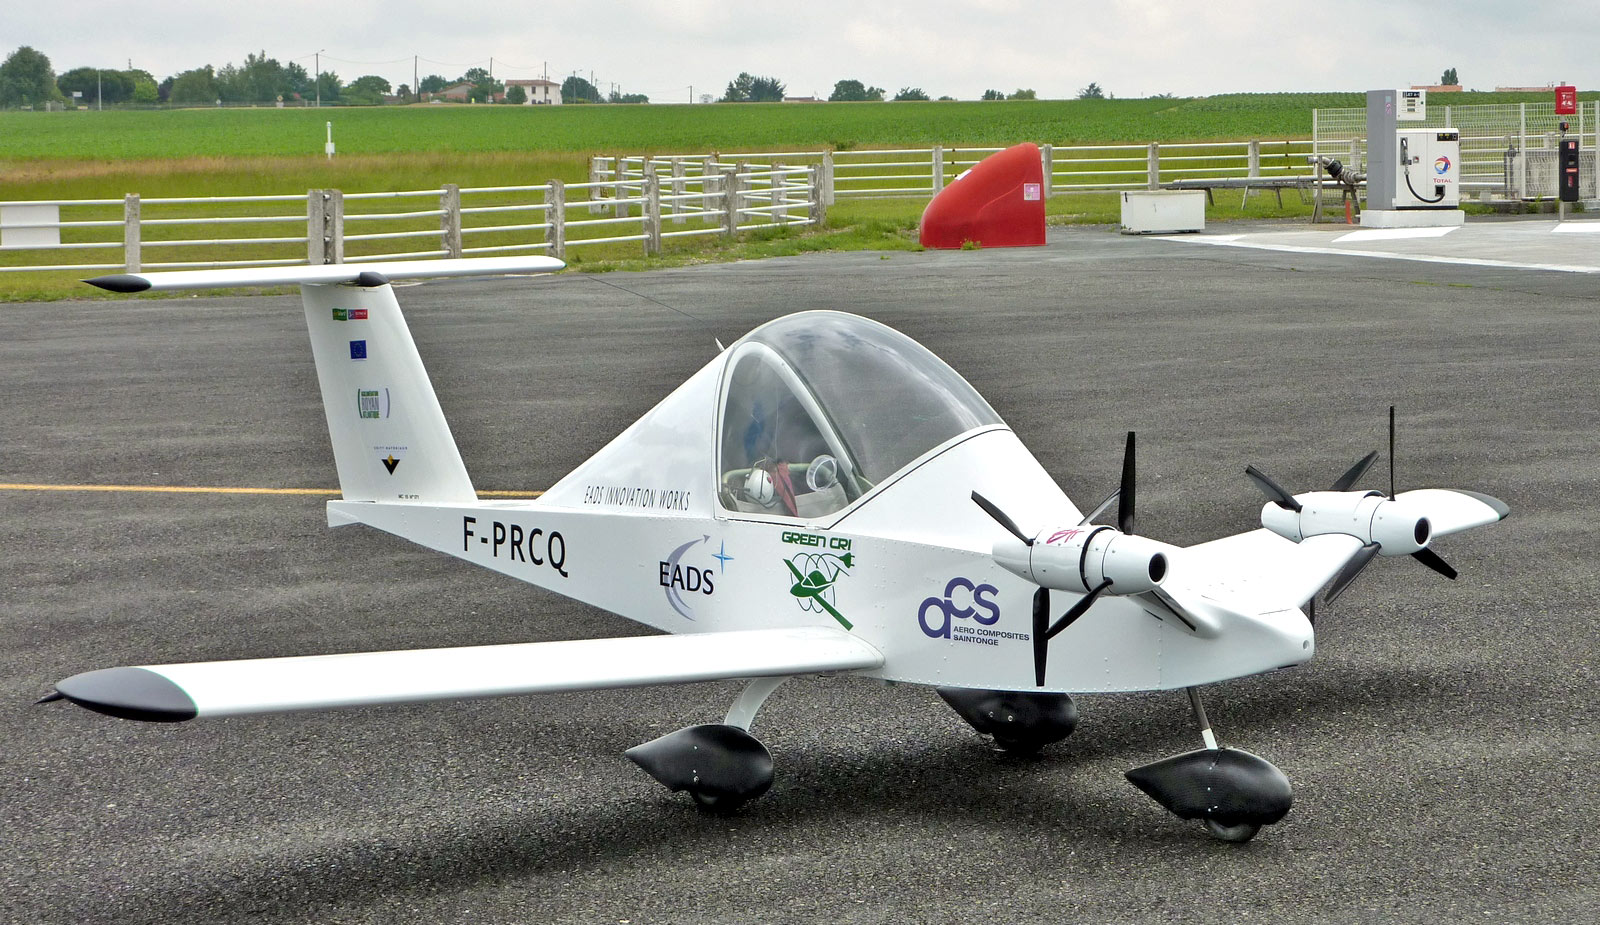 A világ legkisebb repülőgépe, a francia Cri-cri modelleken használt apró benzinmotorok helyett újabban elektomotorokkal is repül